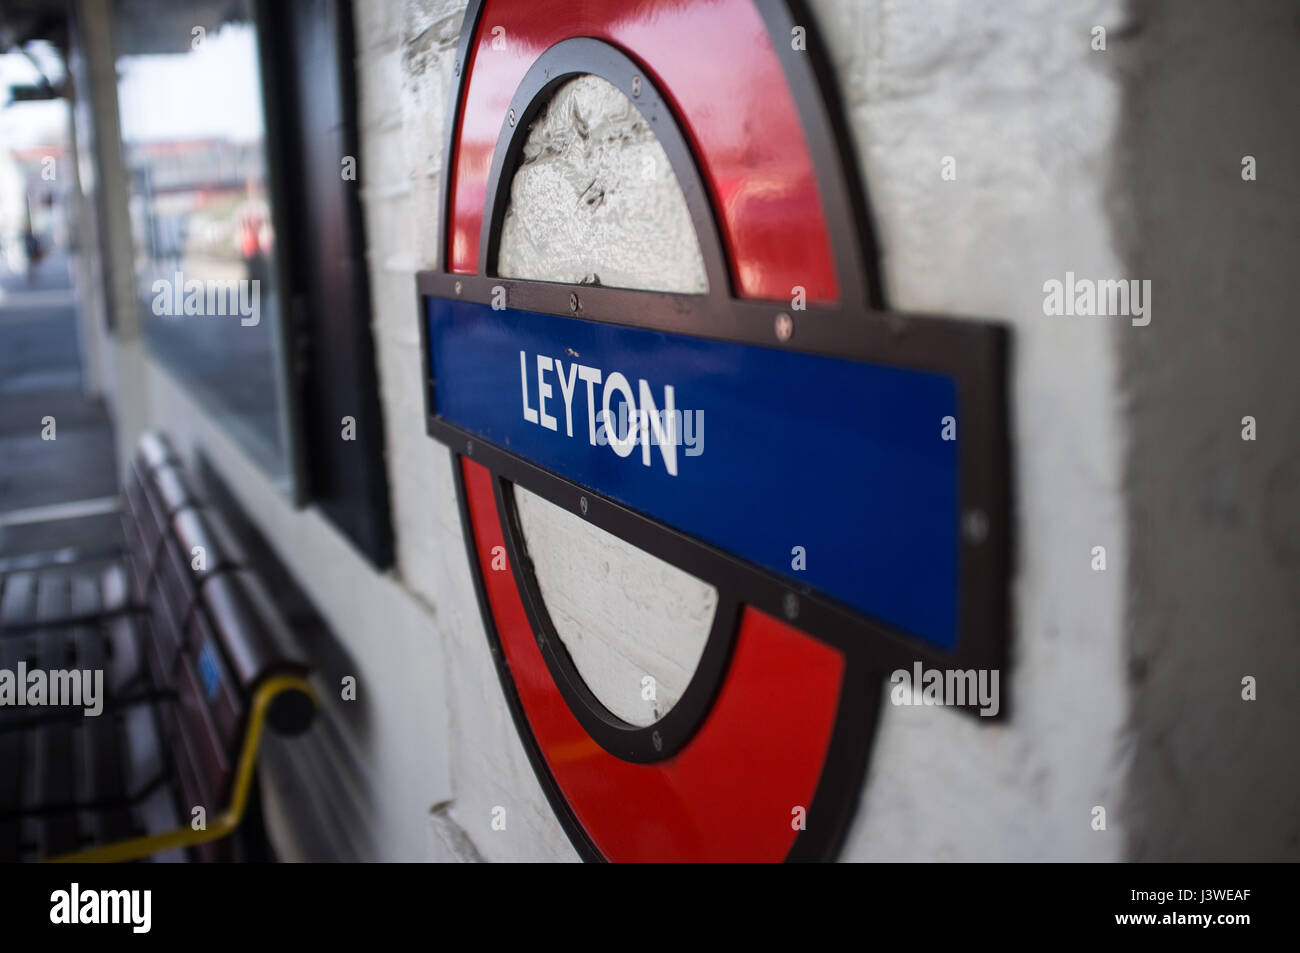 View of London Underground roundel sign on Leyton station platform. Stock Photo